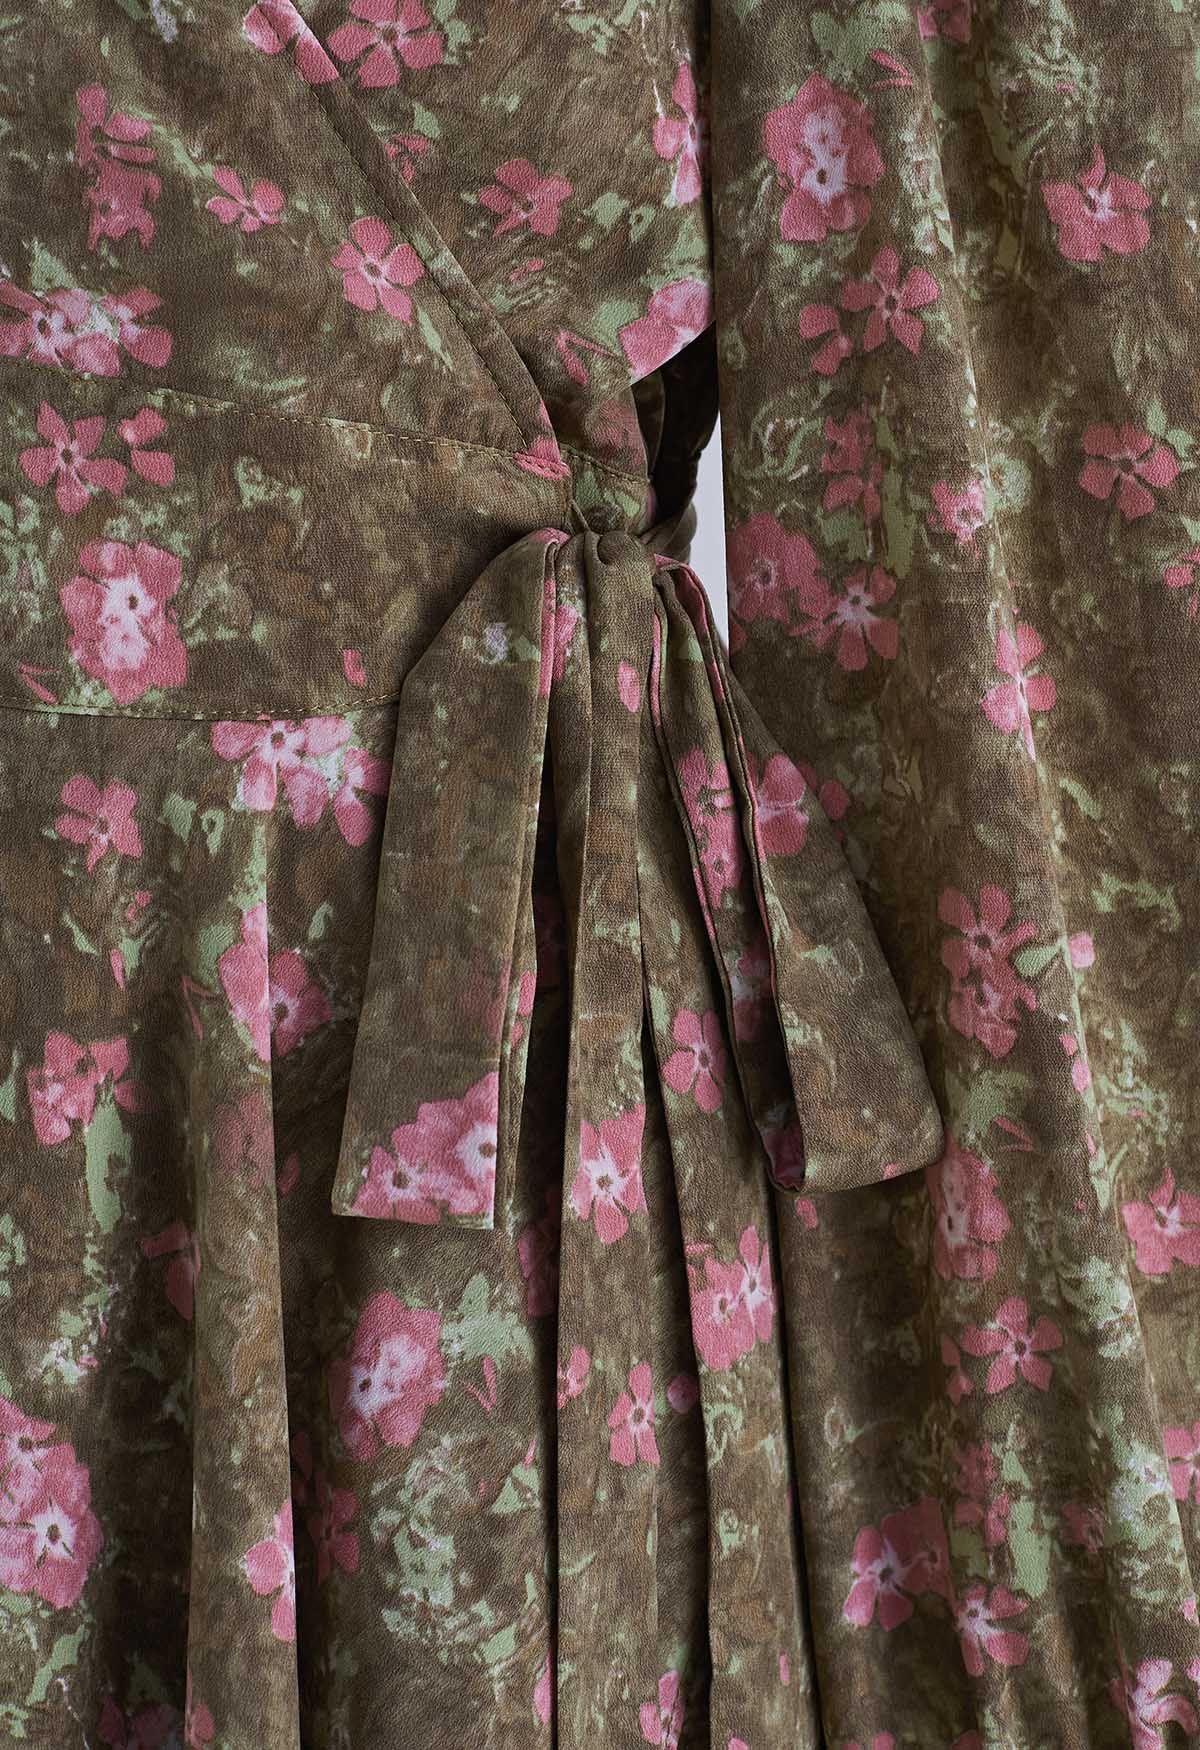 فستان قصير ملفوف من الشيفون باللون البني من Floret